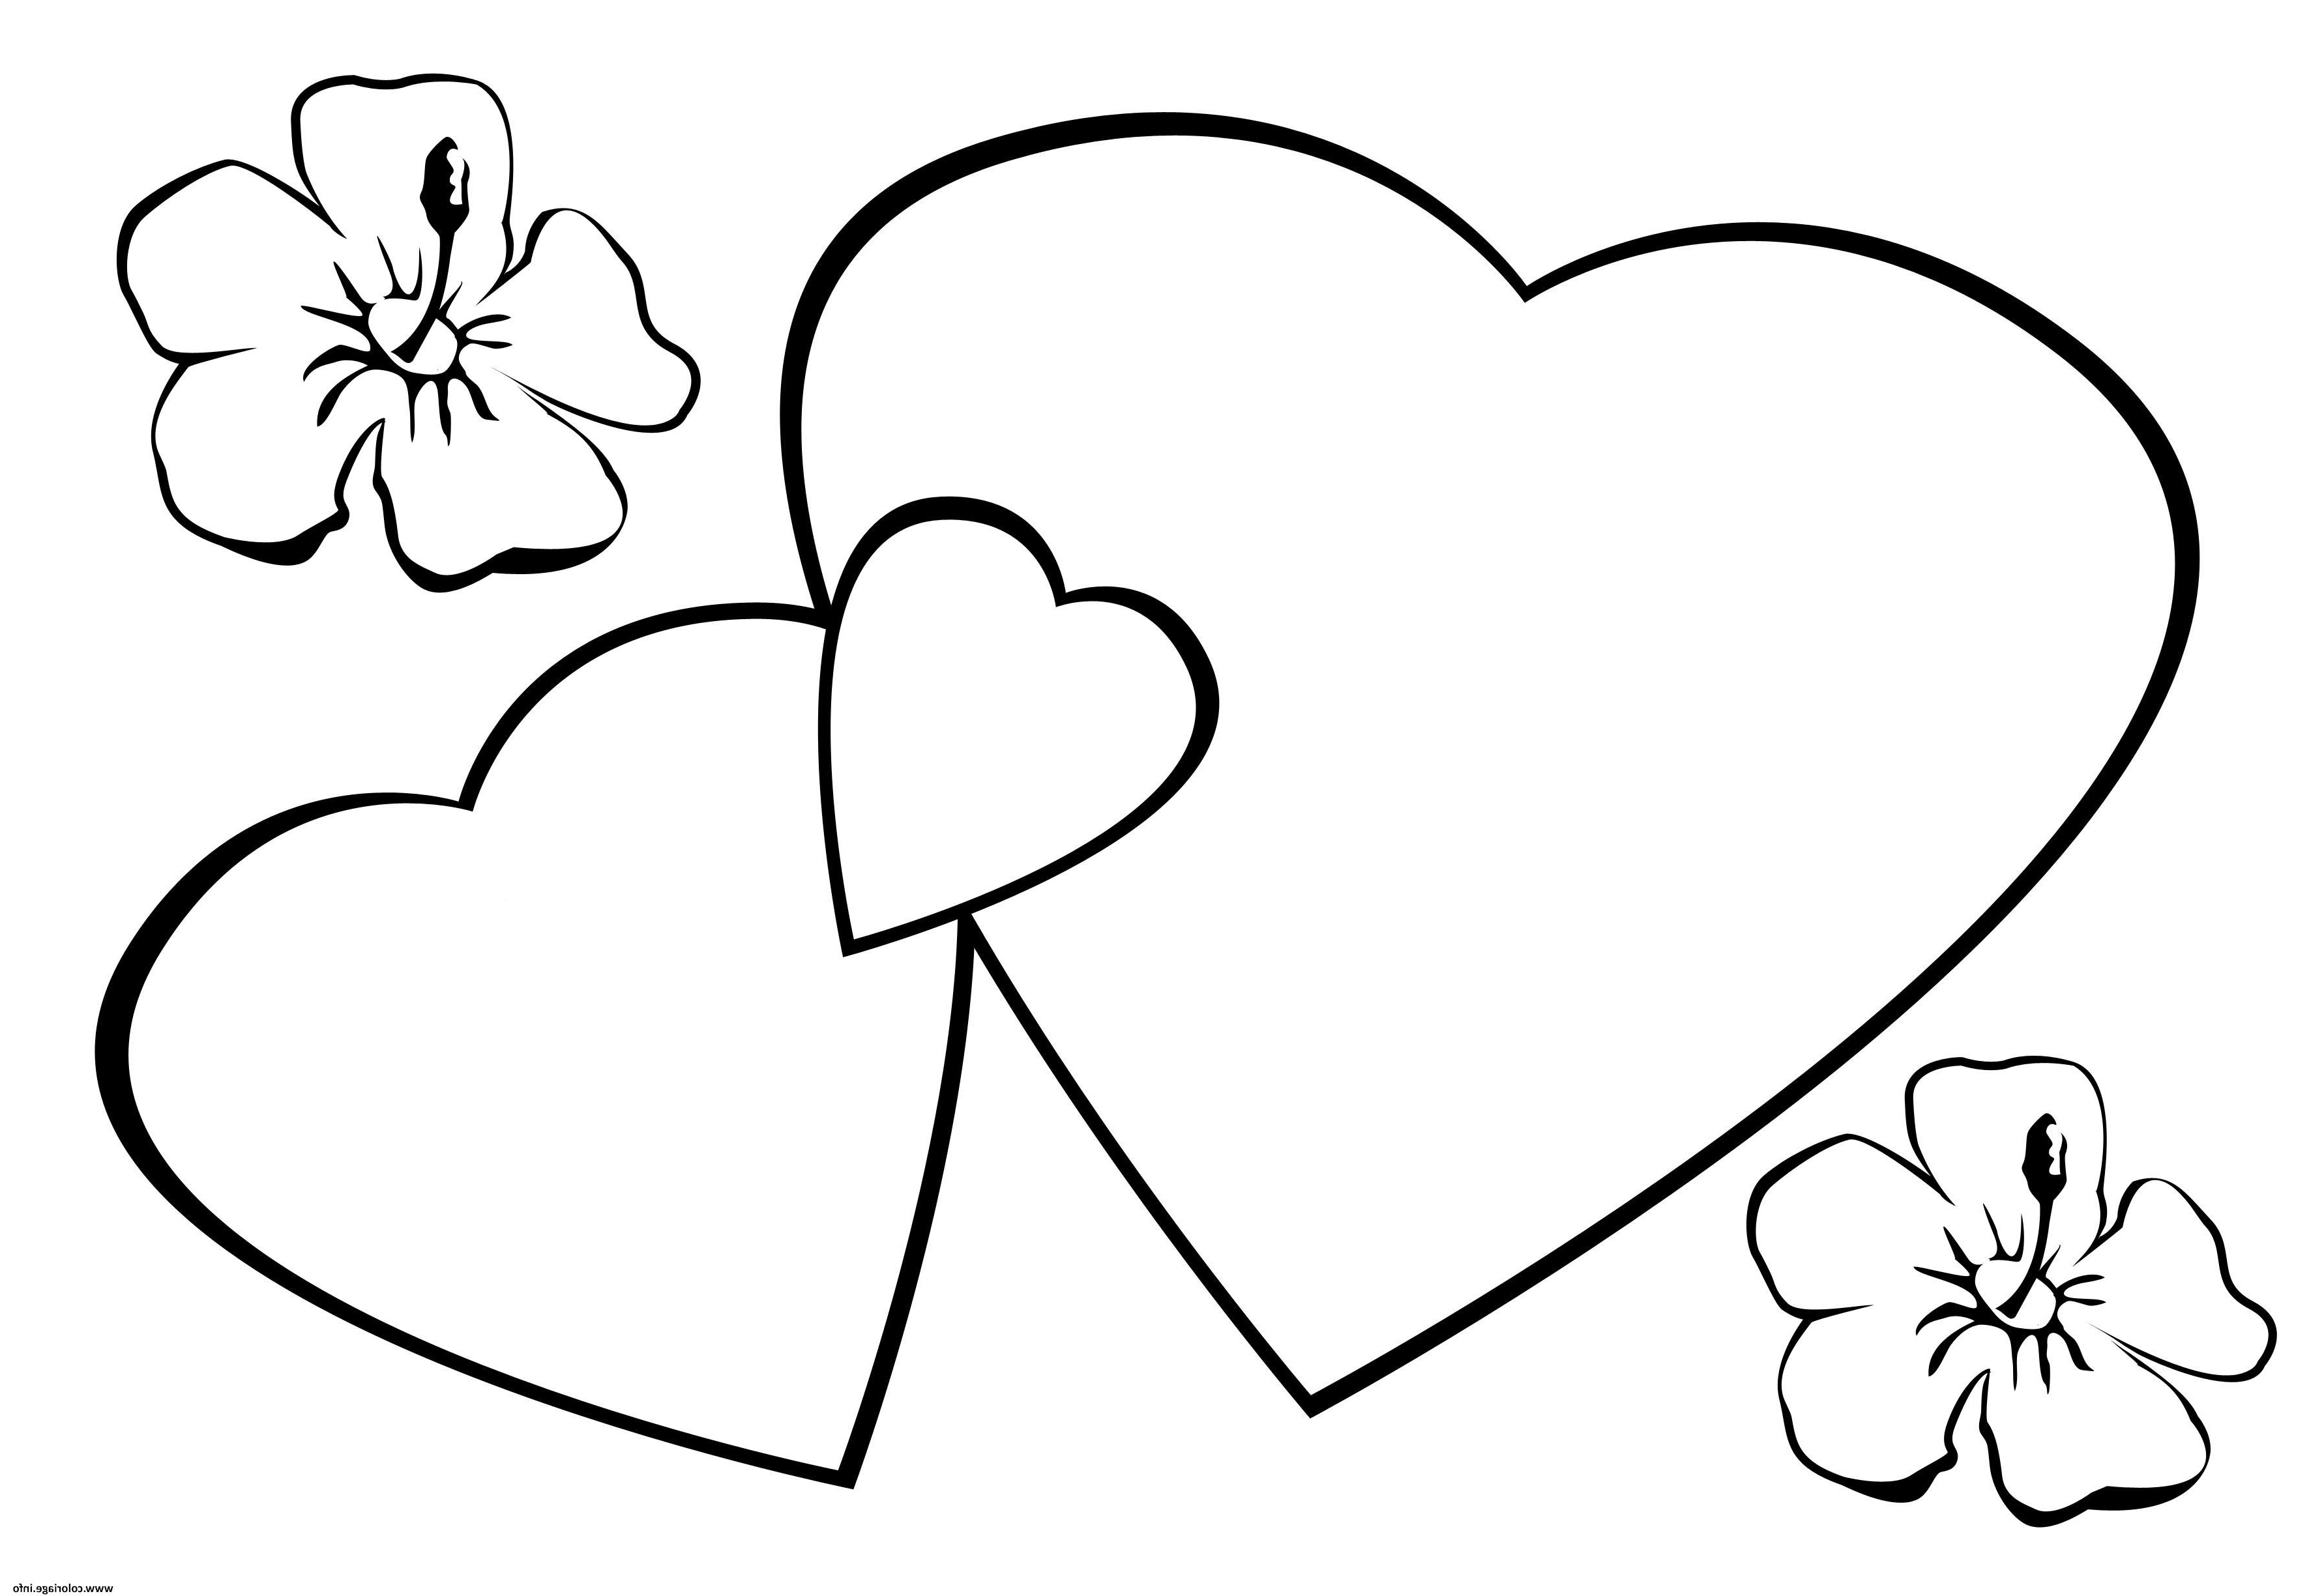 Coloriage Coeur à Imprimer Élégant Image Coloriage Coeurs St Valentin Fleurs Dessin